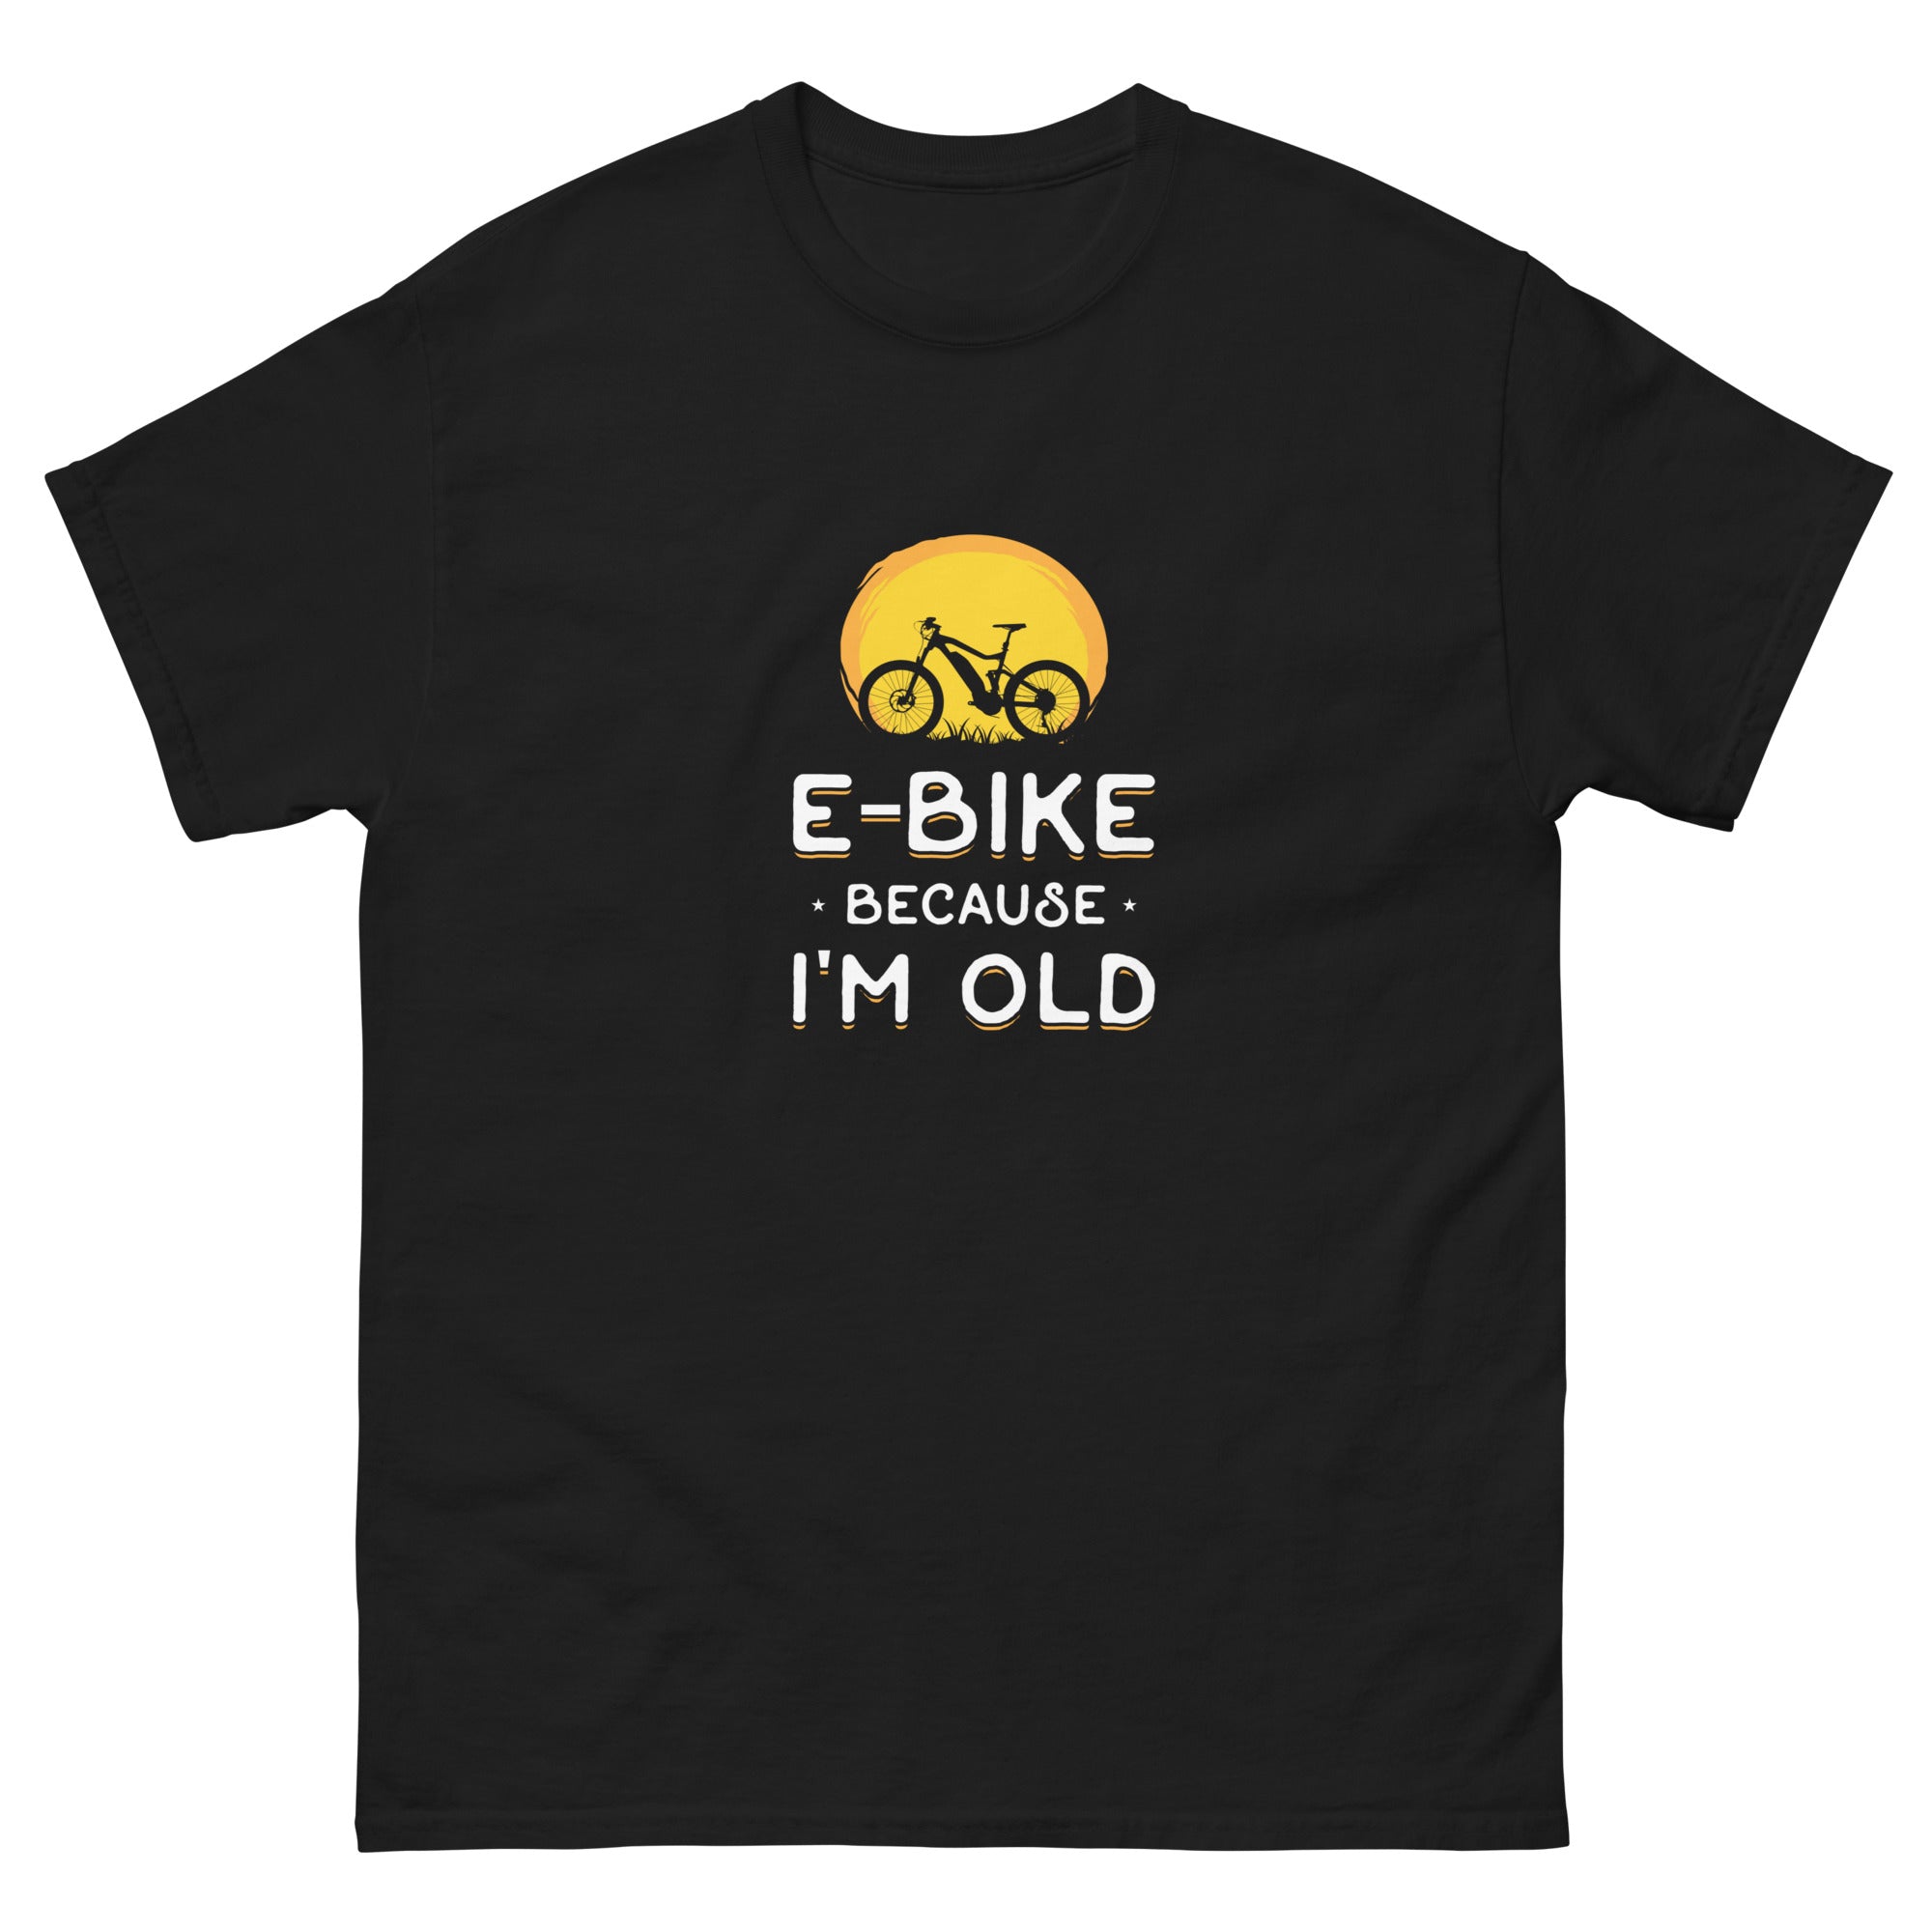 E-bike Because I'm Old Gildan 5000 Men's T-shirt Black